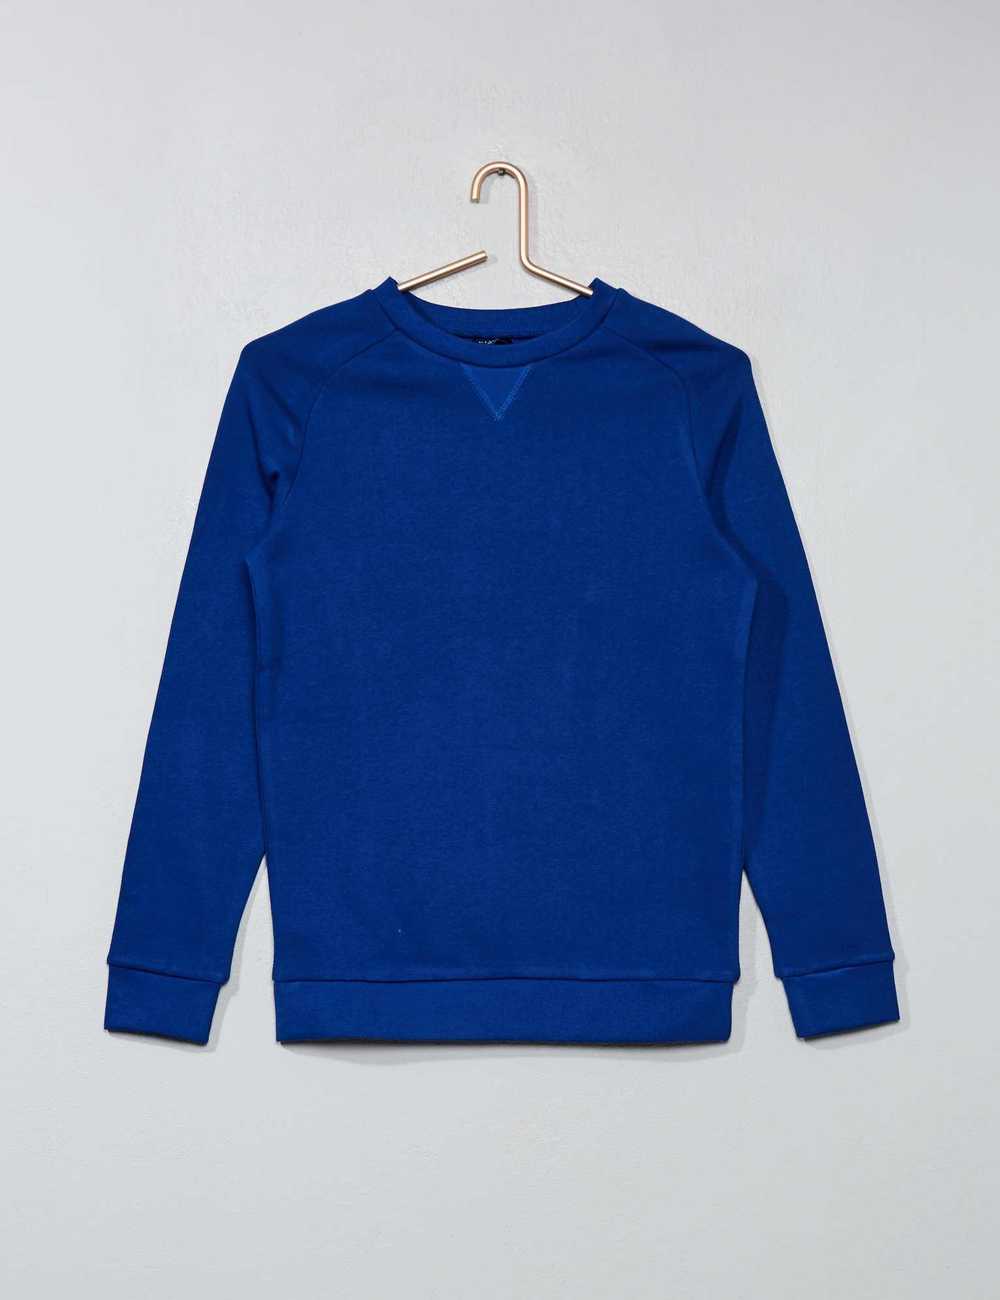 Buy AE Crew Neck Sweatshirt online